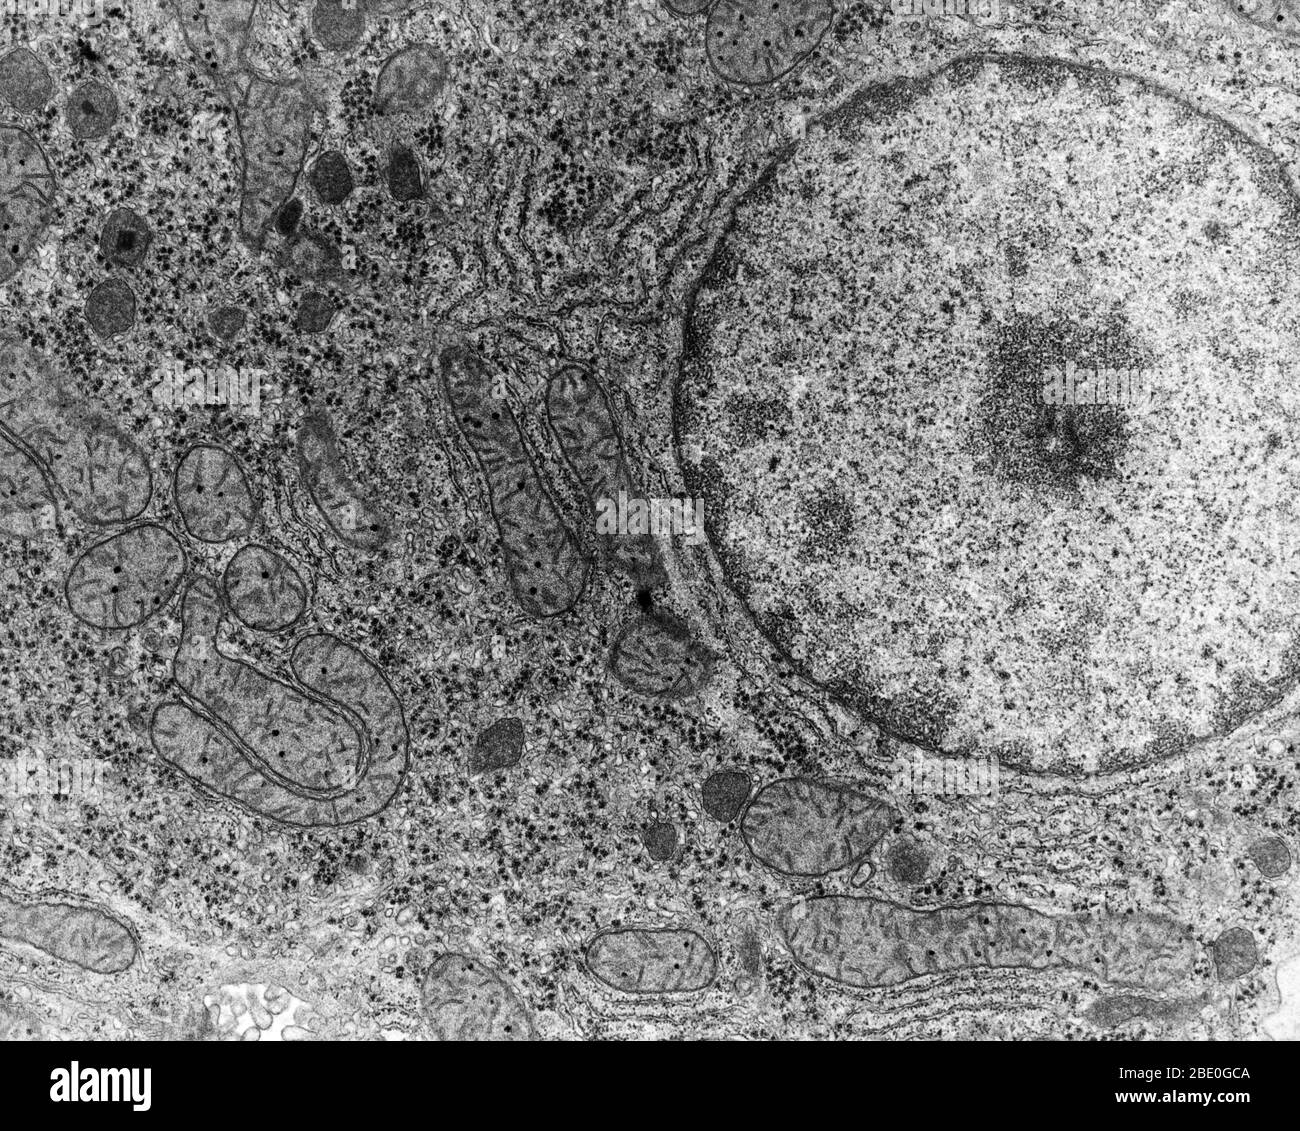 Micrografia elettronica (EM) di cellule epatiche umane (epatociti). Foto Stock